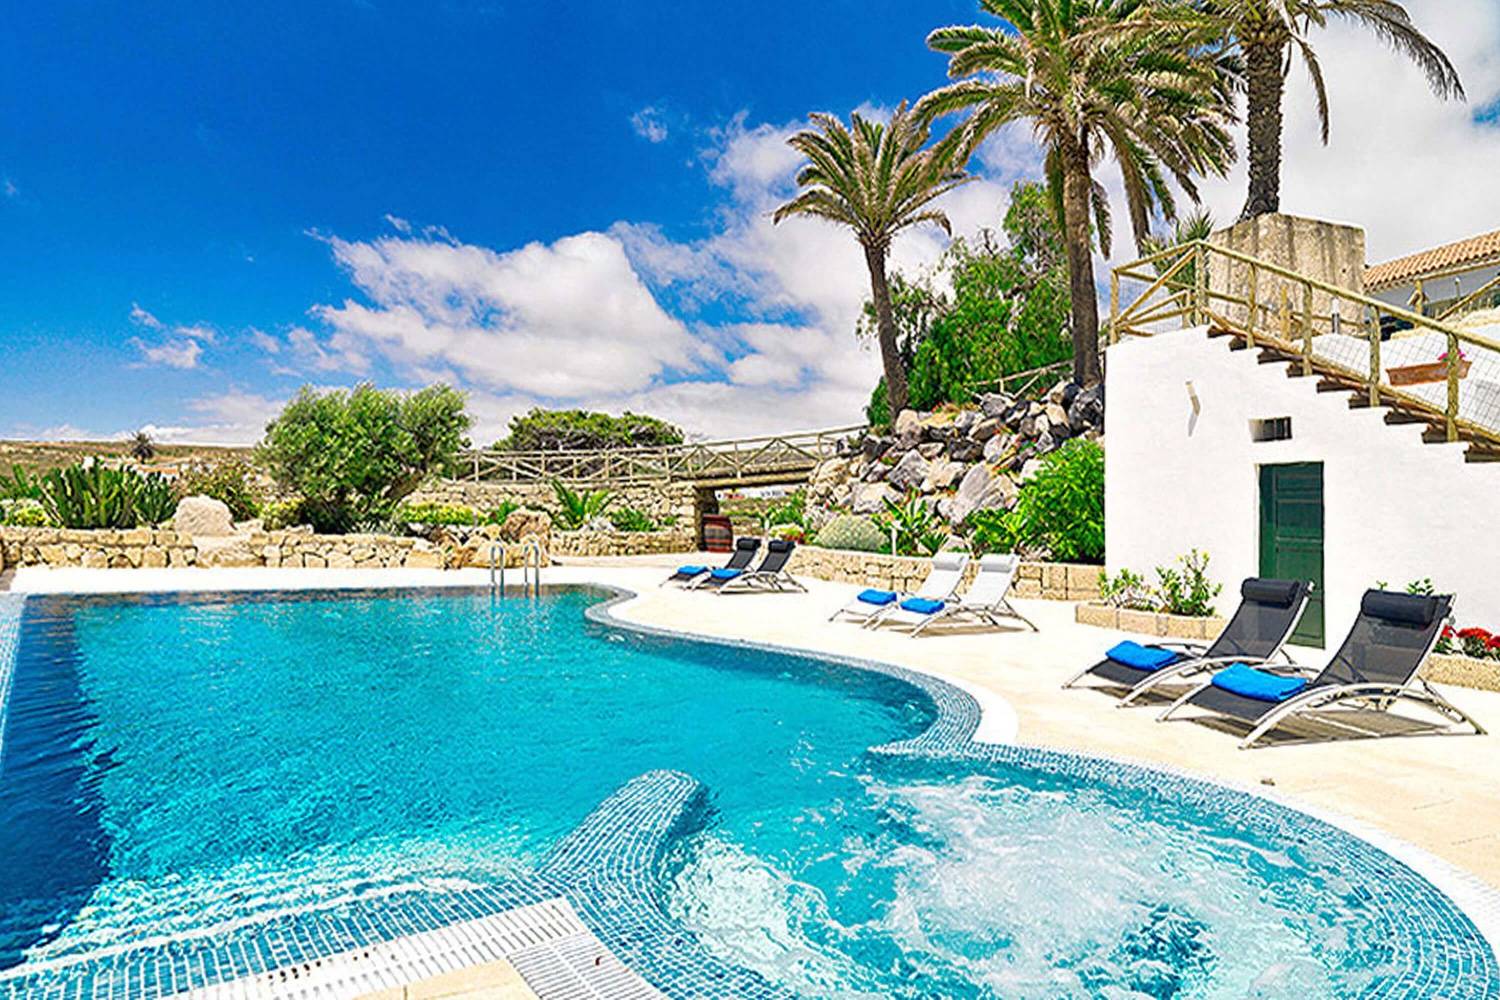 Rustikální rekreační dům s komunálním bazénu pro odpočinkovou dovolenou na ostrově Tenerife